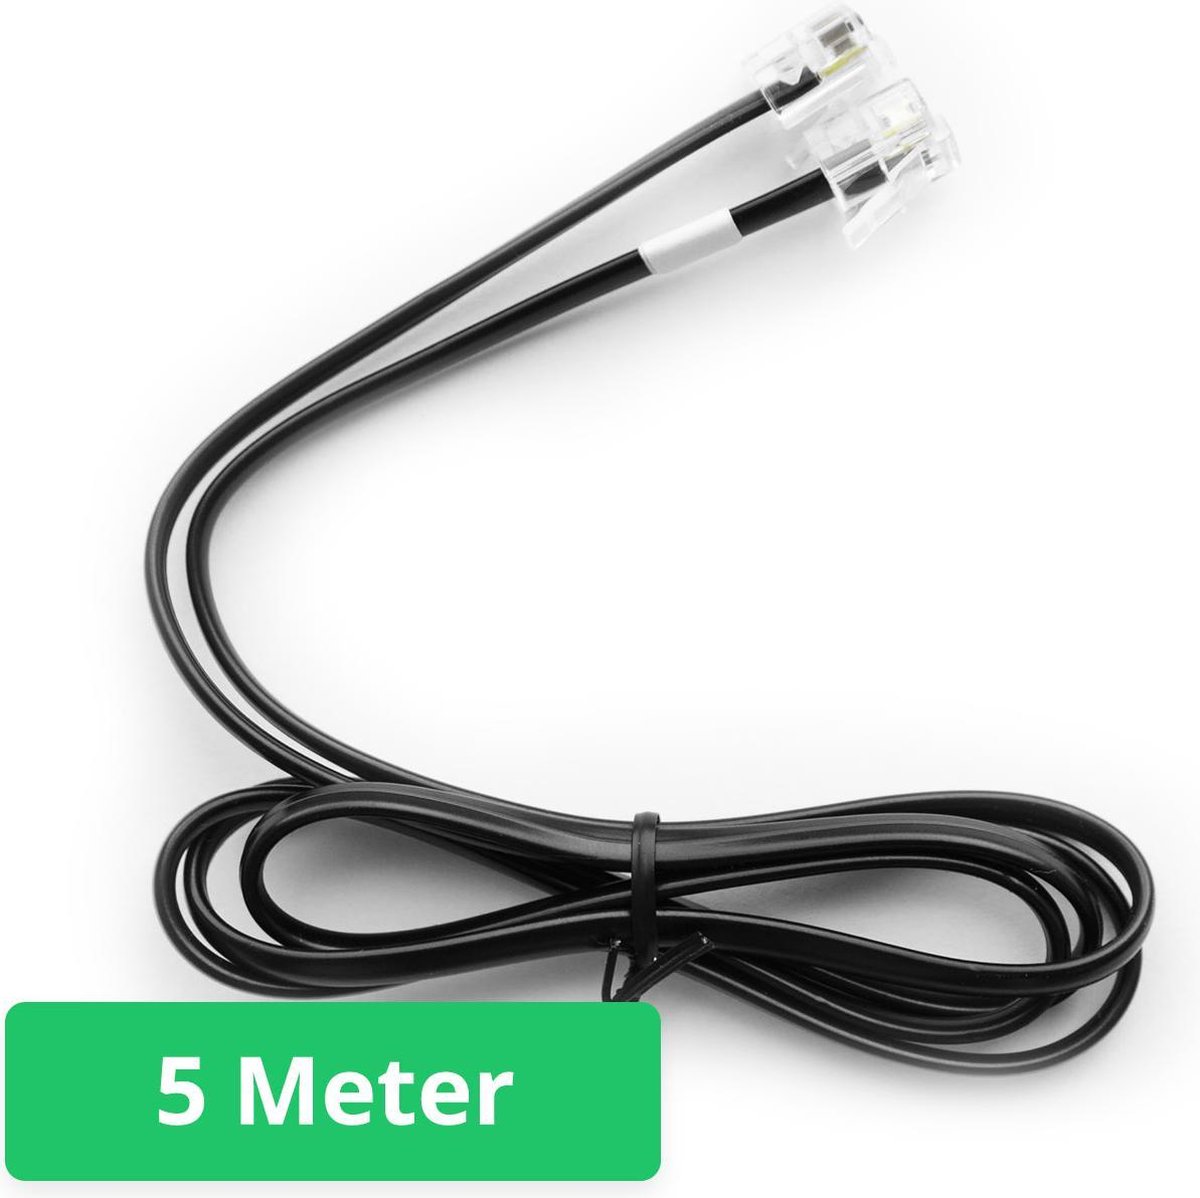 P1 Slimme meter kabel - 5 Meter | bol.com